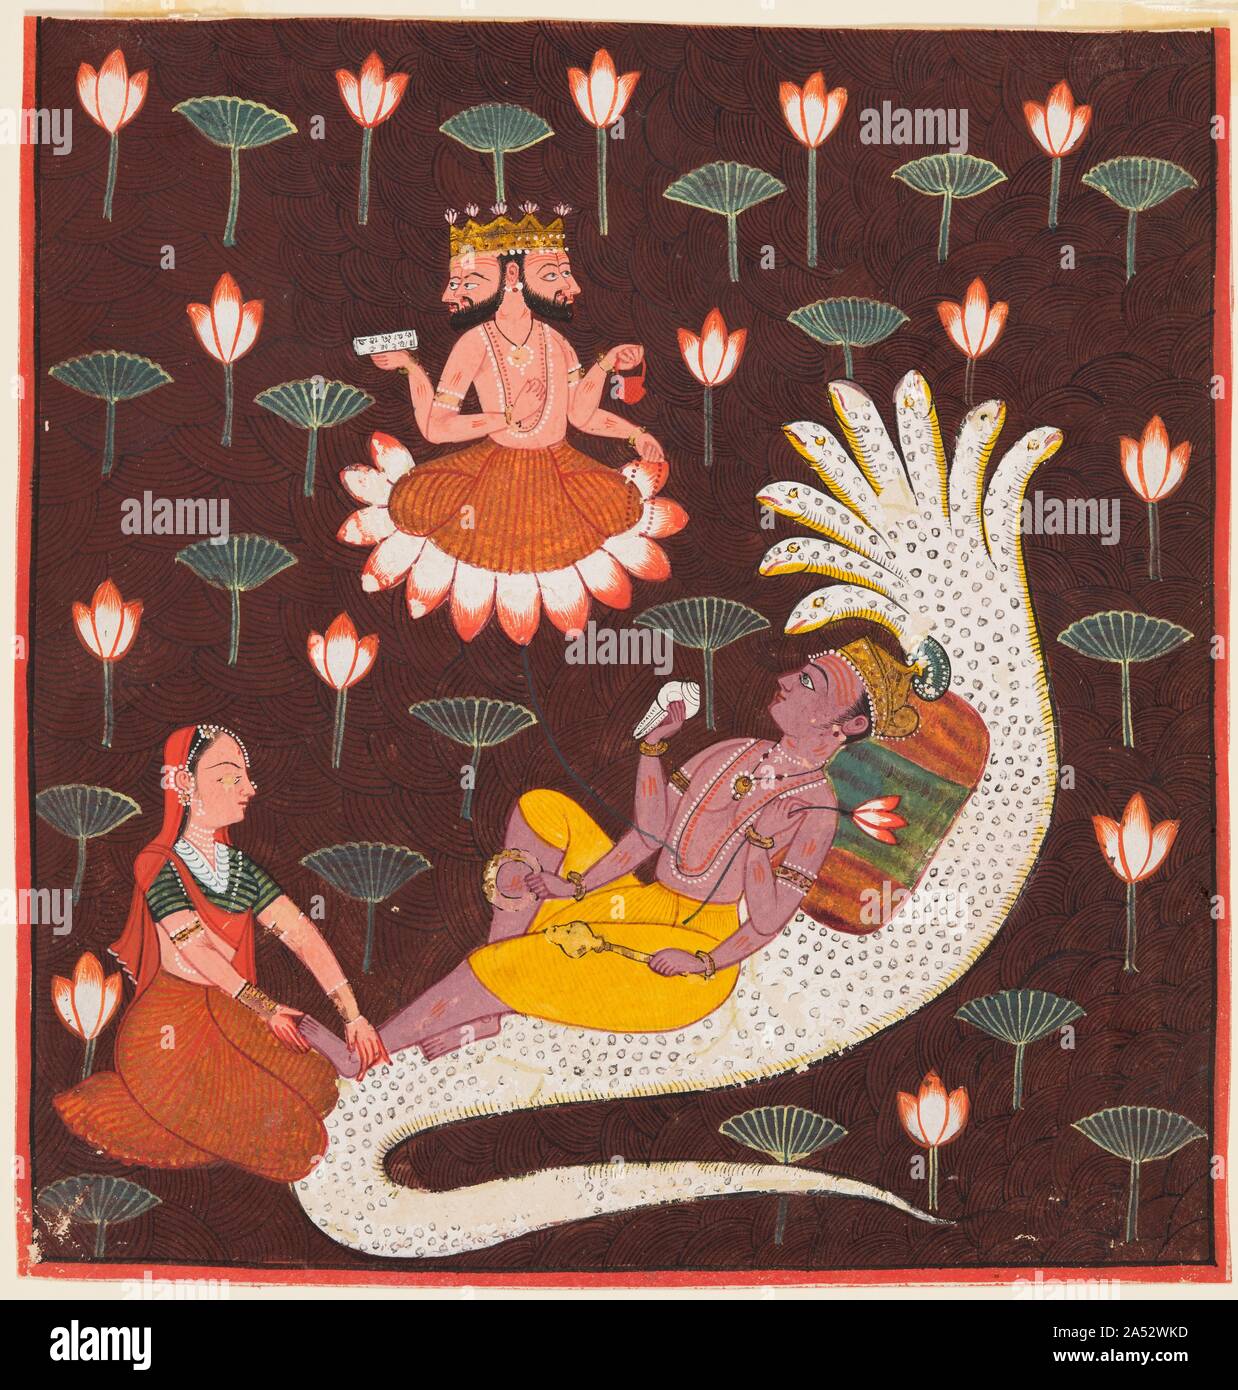 Vishnu sur Ananta, le serpent sans fin, c. 1700. Avant la création du monde, le dieu Vishnu s'était endormi sur le serpent Ananta, flottant sur l'océan cosmique. Quand le moment est venu pour lui de créer le monde, Vishnu&# x2019;s femme Lakshmi se réveilla doucement en massant ses pieds. Puis, sur son nombril émergé une fleur de lotus, et Vishnu a donné naissance à Brahma, le dieu de la création. Comme les plantes qui poussent dans l'eau, les fleurs de lotus indiquent la présence de l'eau, et dans cette peinture qu'ils sont audacieusement réparties sur un fond brun profond avec panier-tissent les motifs. Banque D'Images